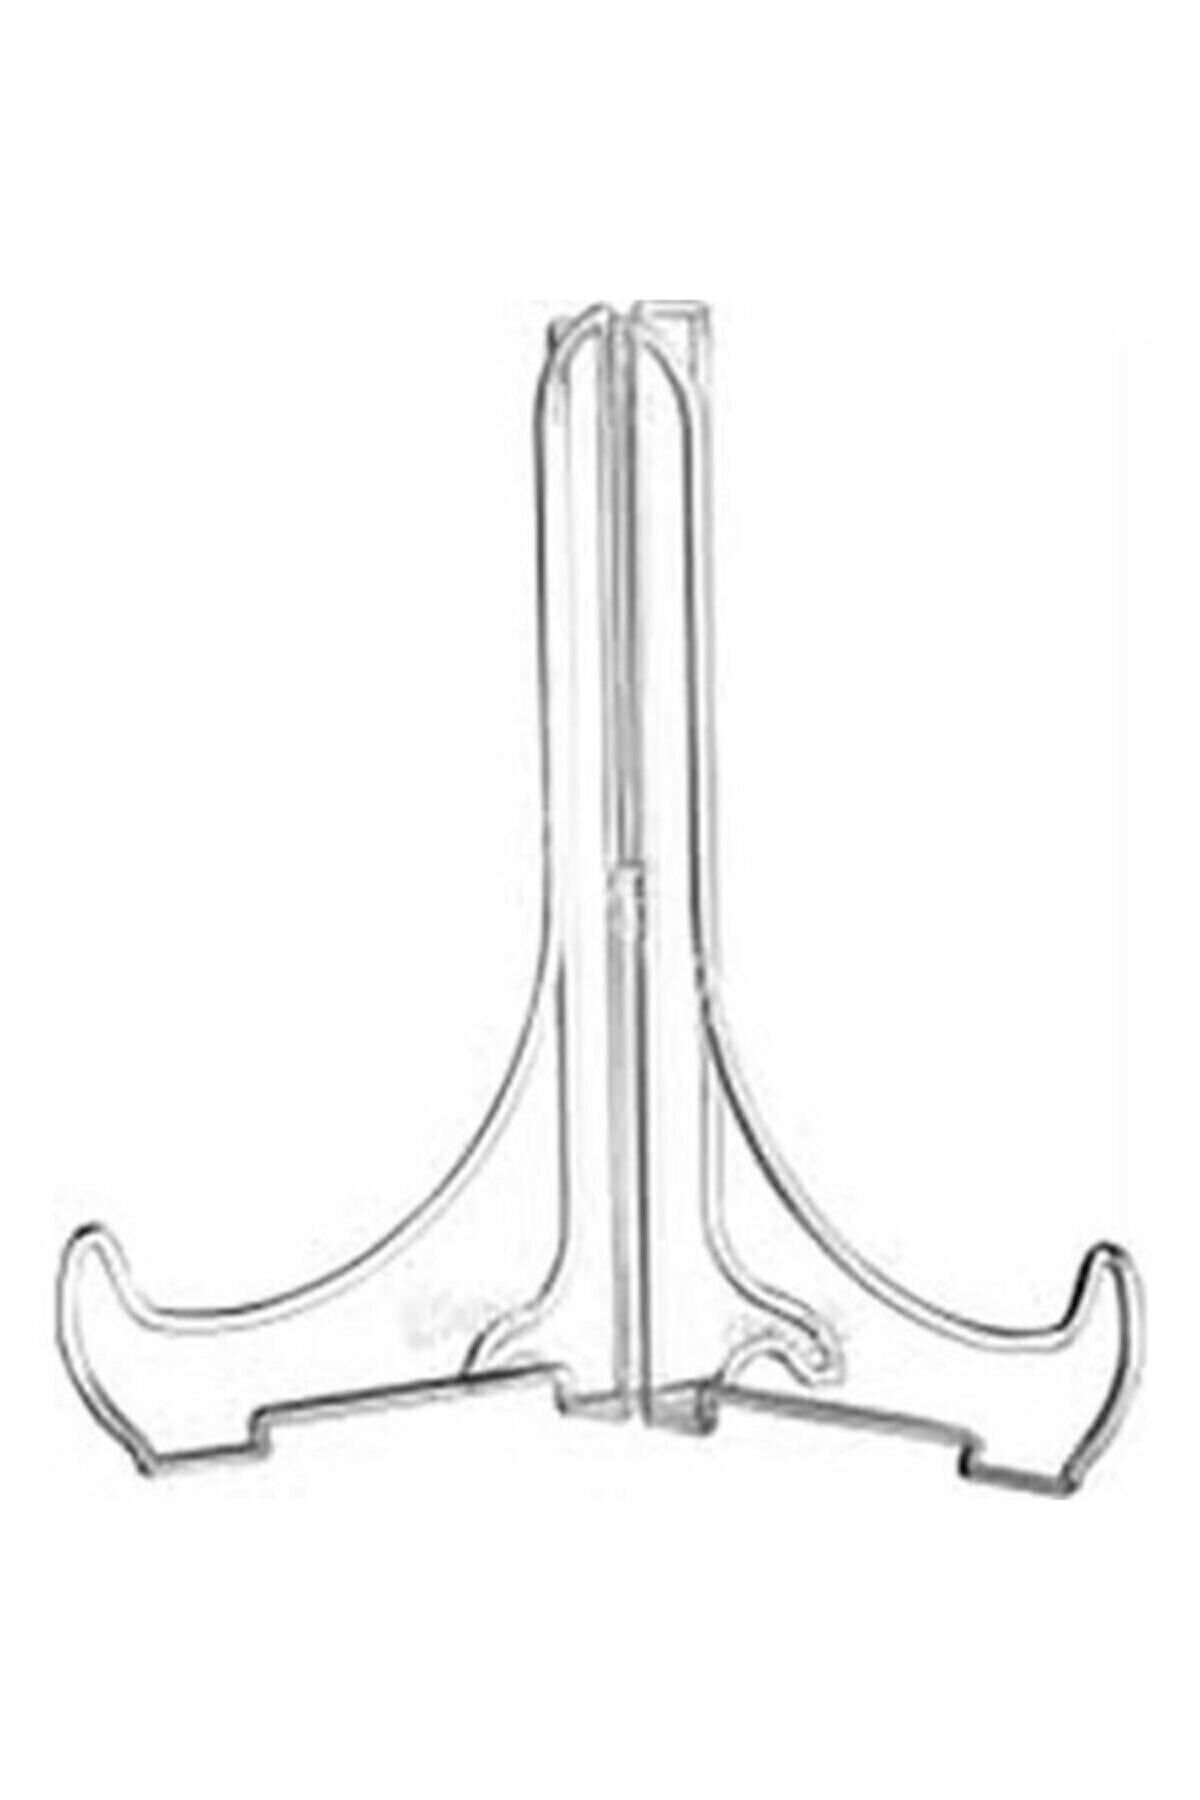 RoseRoi Geçmeli Teşhir Ayağı Stand Fotoğraf Tablo Çerçeve Ayağı Sunum Ayağı 15 X 18 Cm Ebat